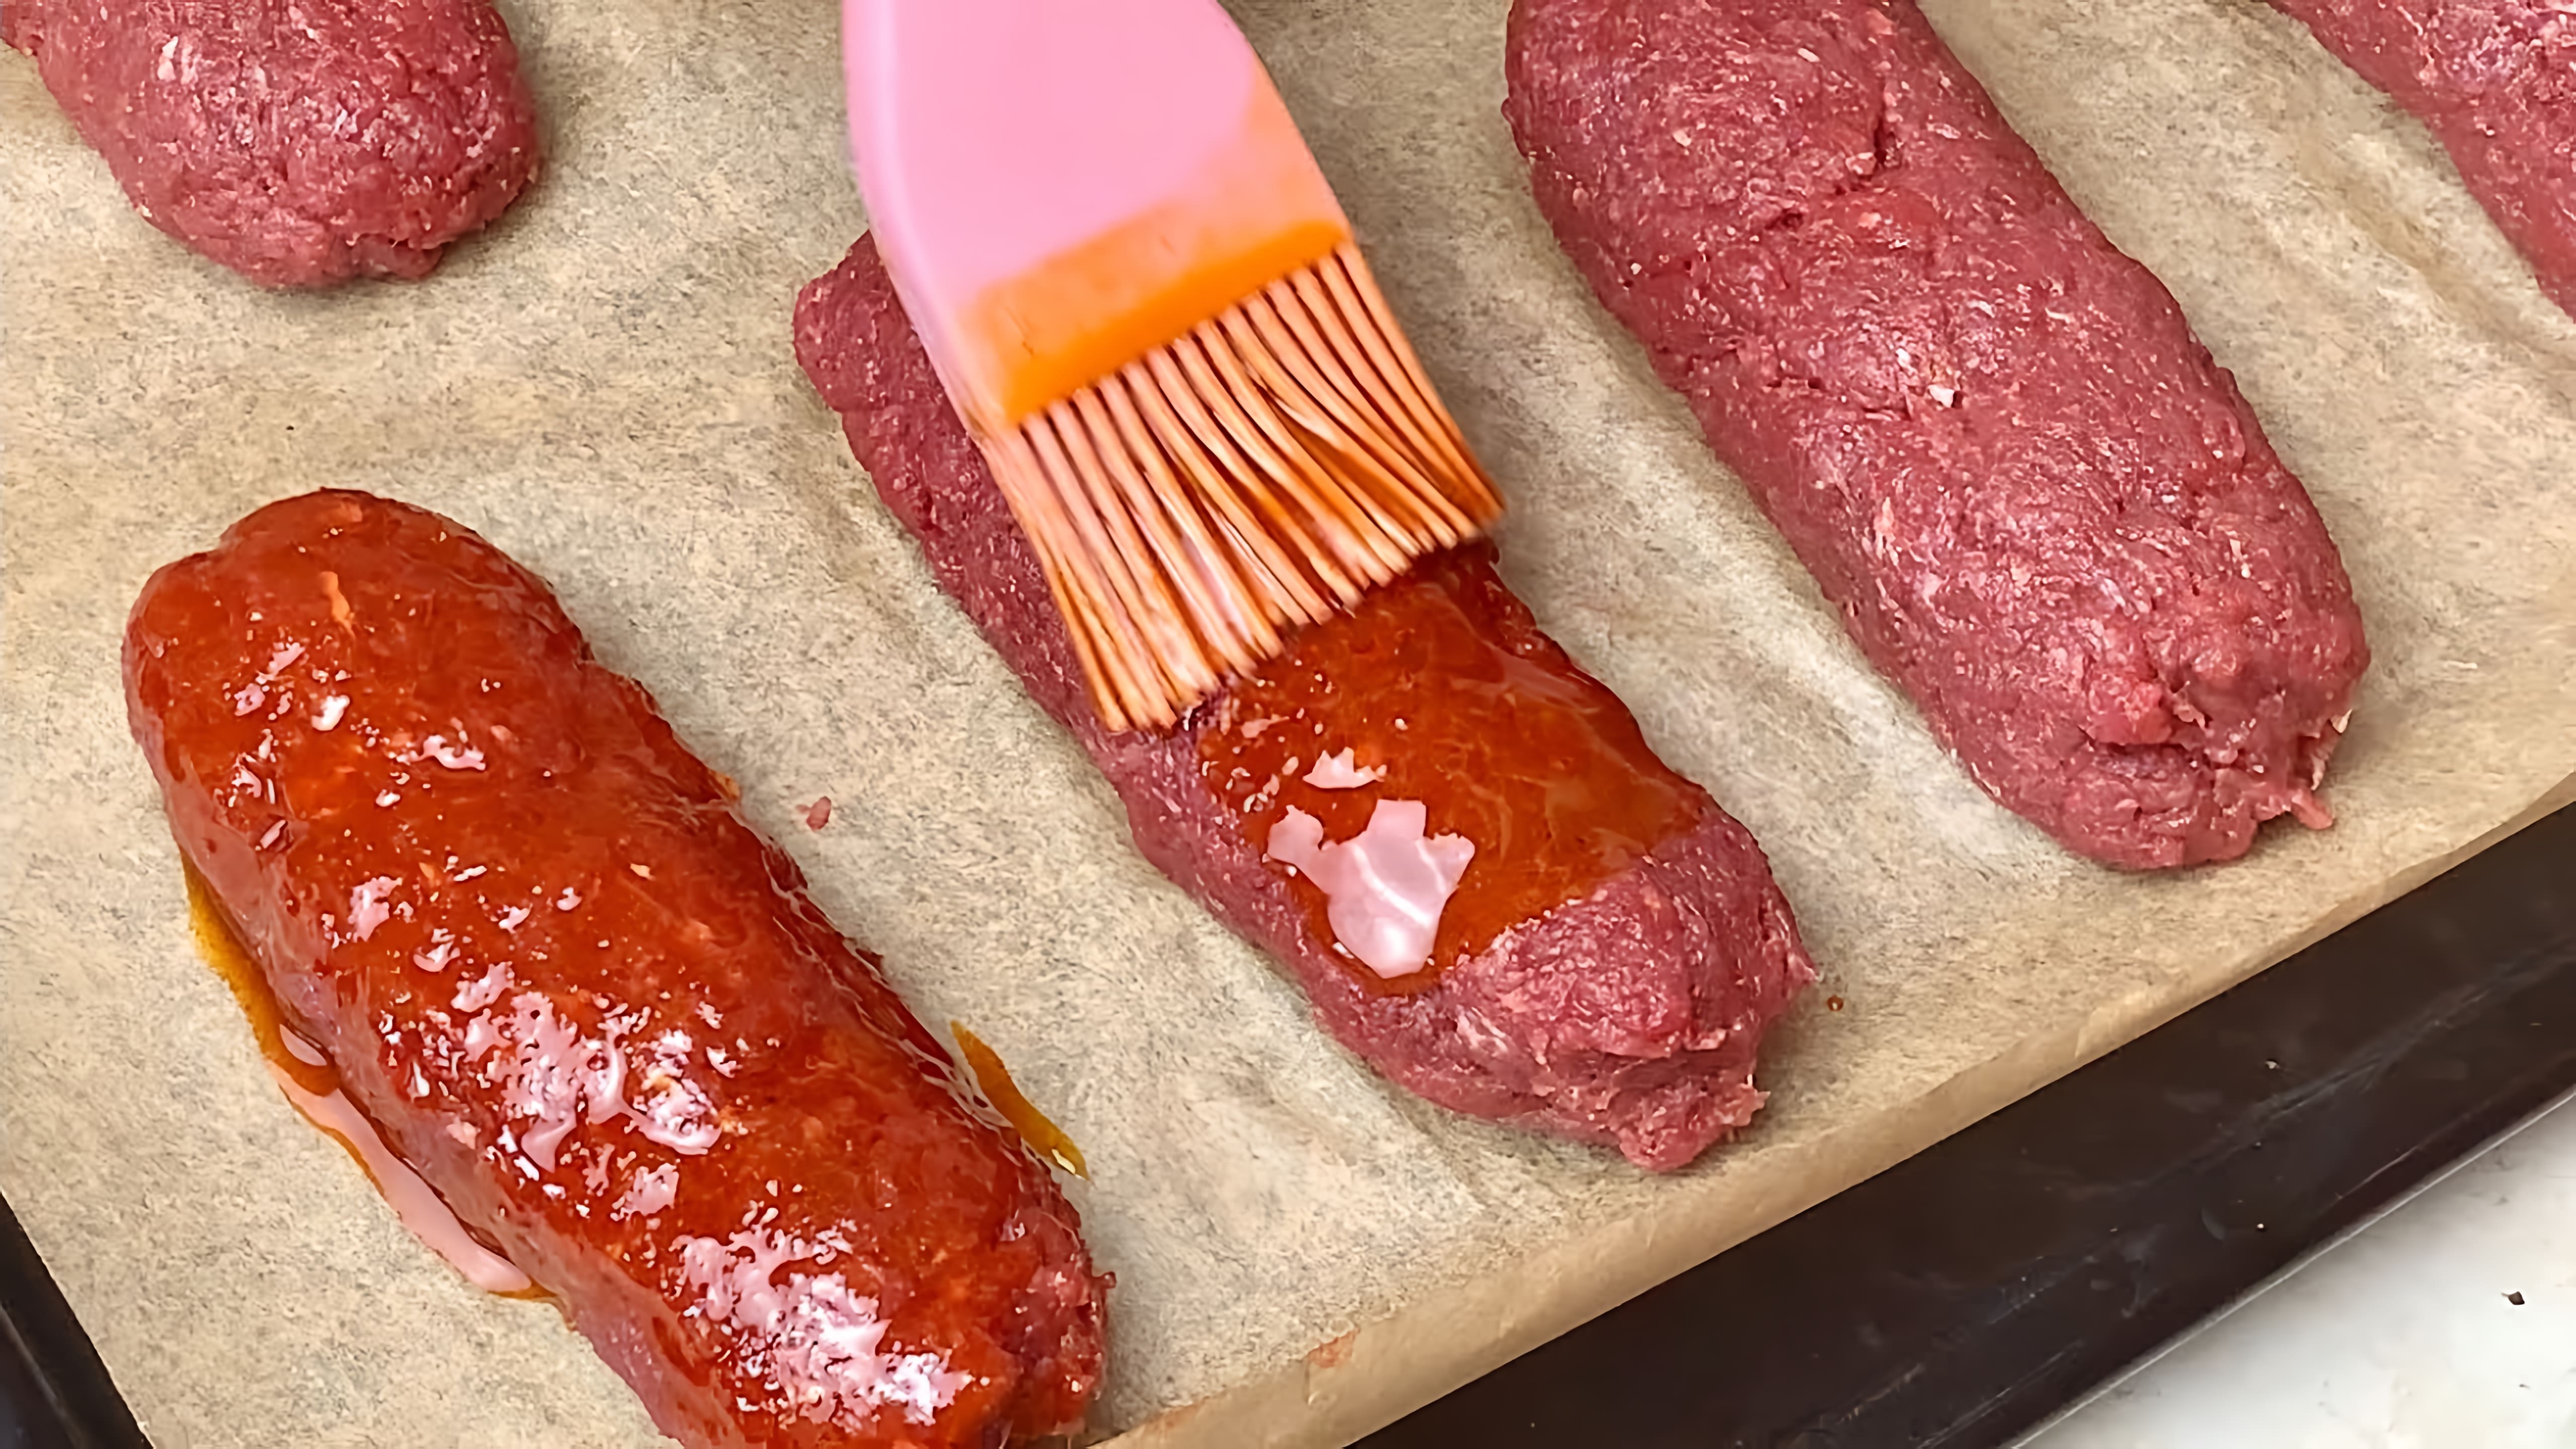 Видео: Самое ЖЕСТКОЕ Мясо будет таять во рту за 15 минут работы! Они такие вкусные, что готовлю очень часто